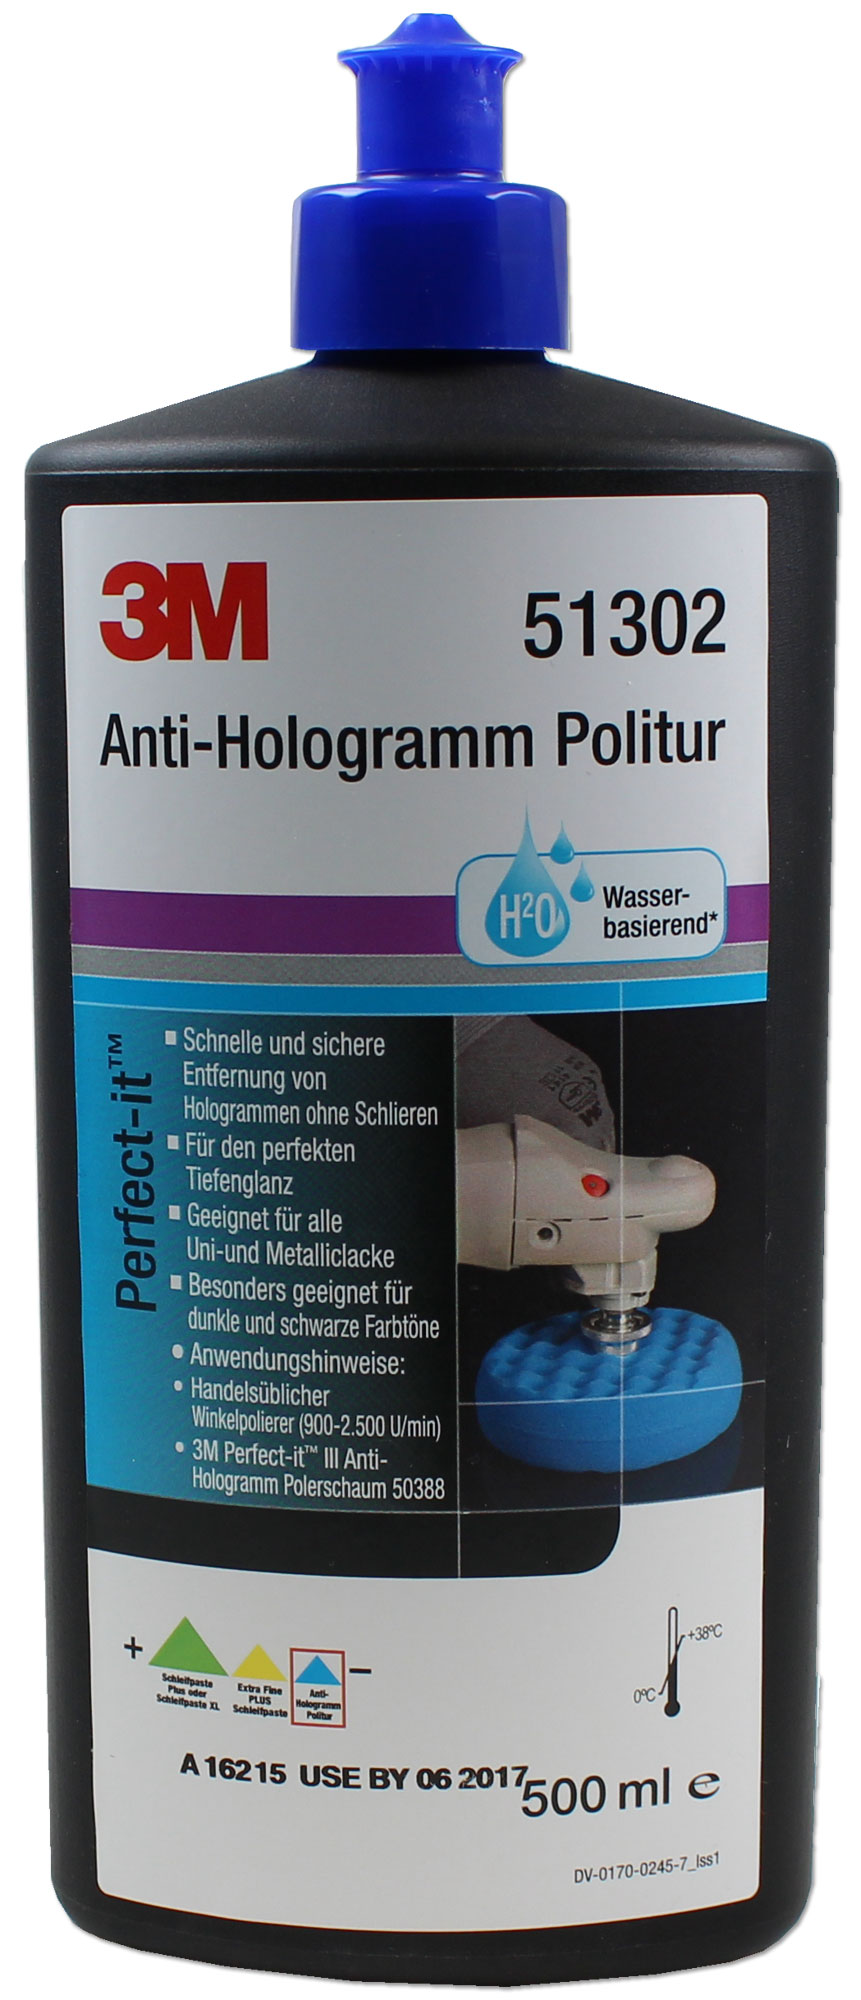 3M Perfect-it III Anti-Hologramm Politur